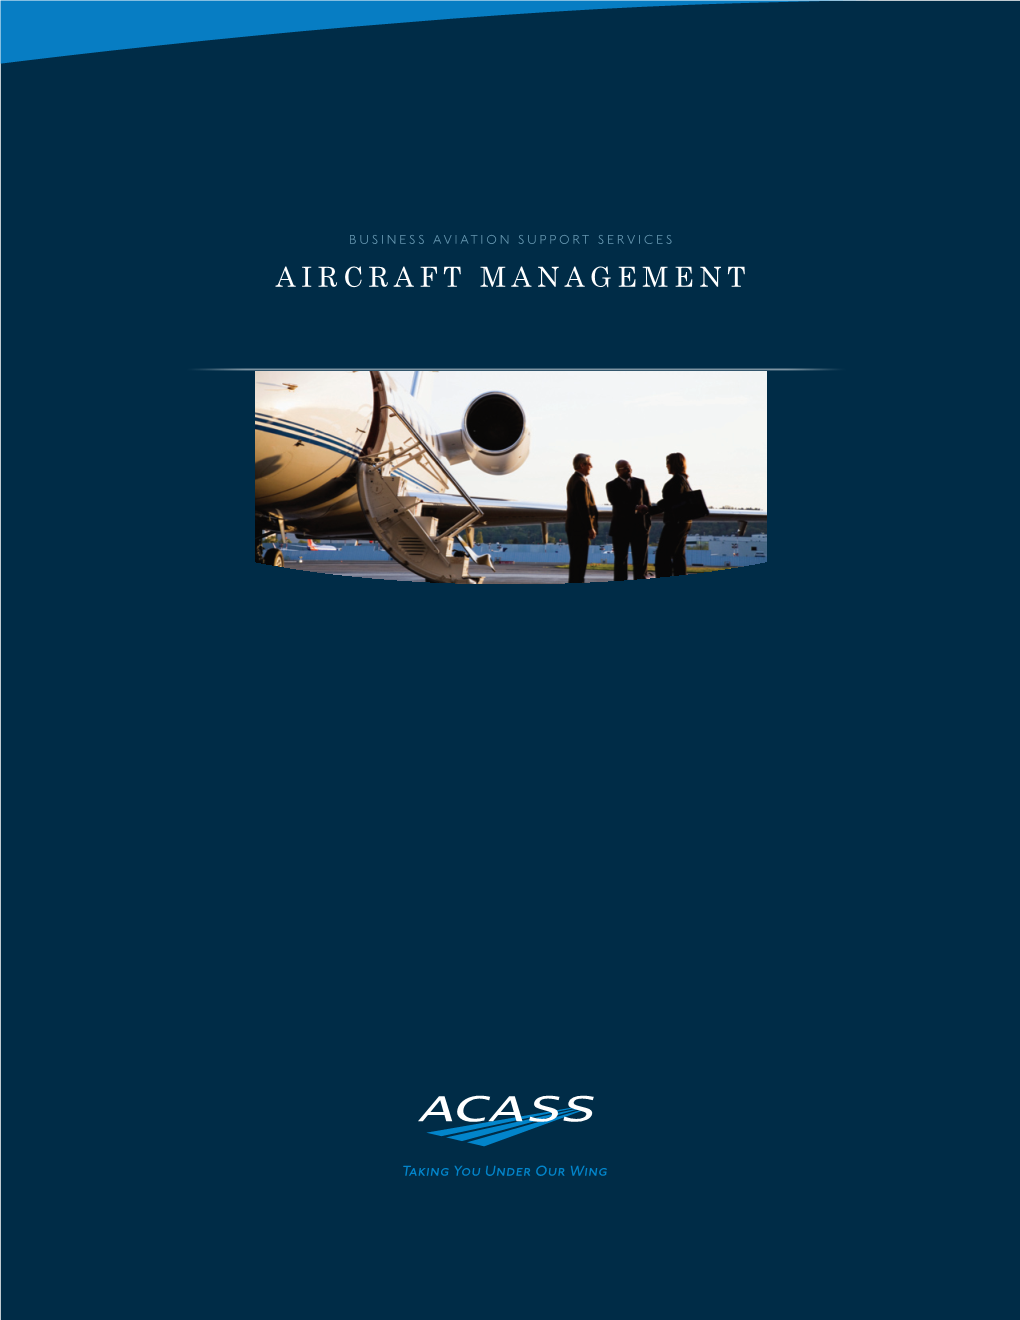 Aircraft Management